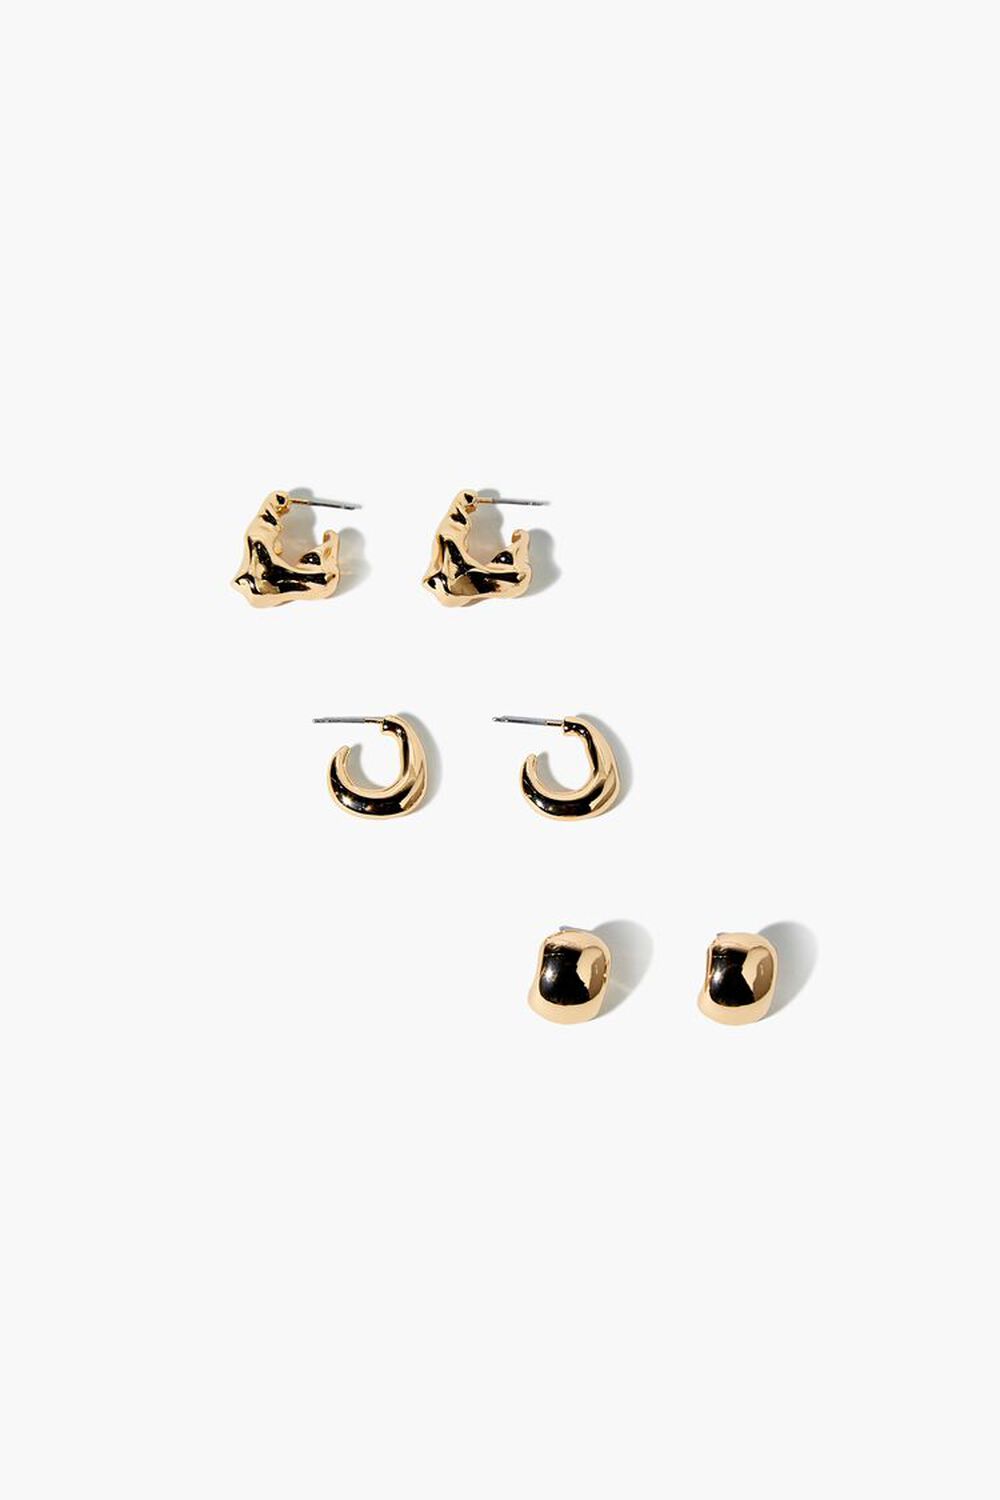 GOLD Stud & Hoop Earrings Set, image 1